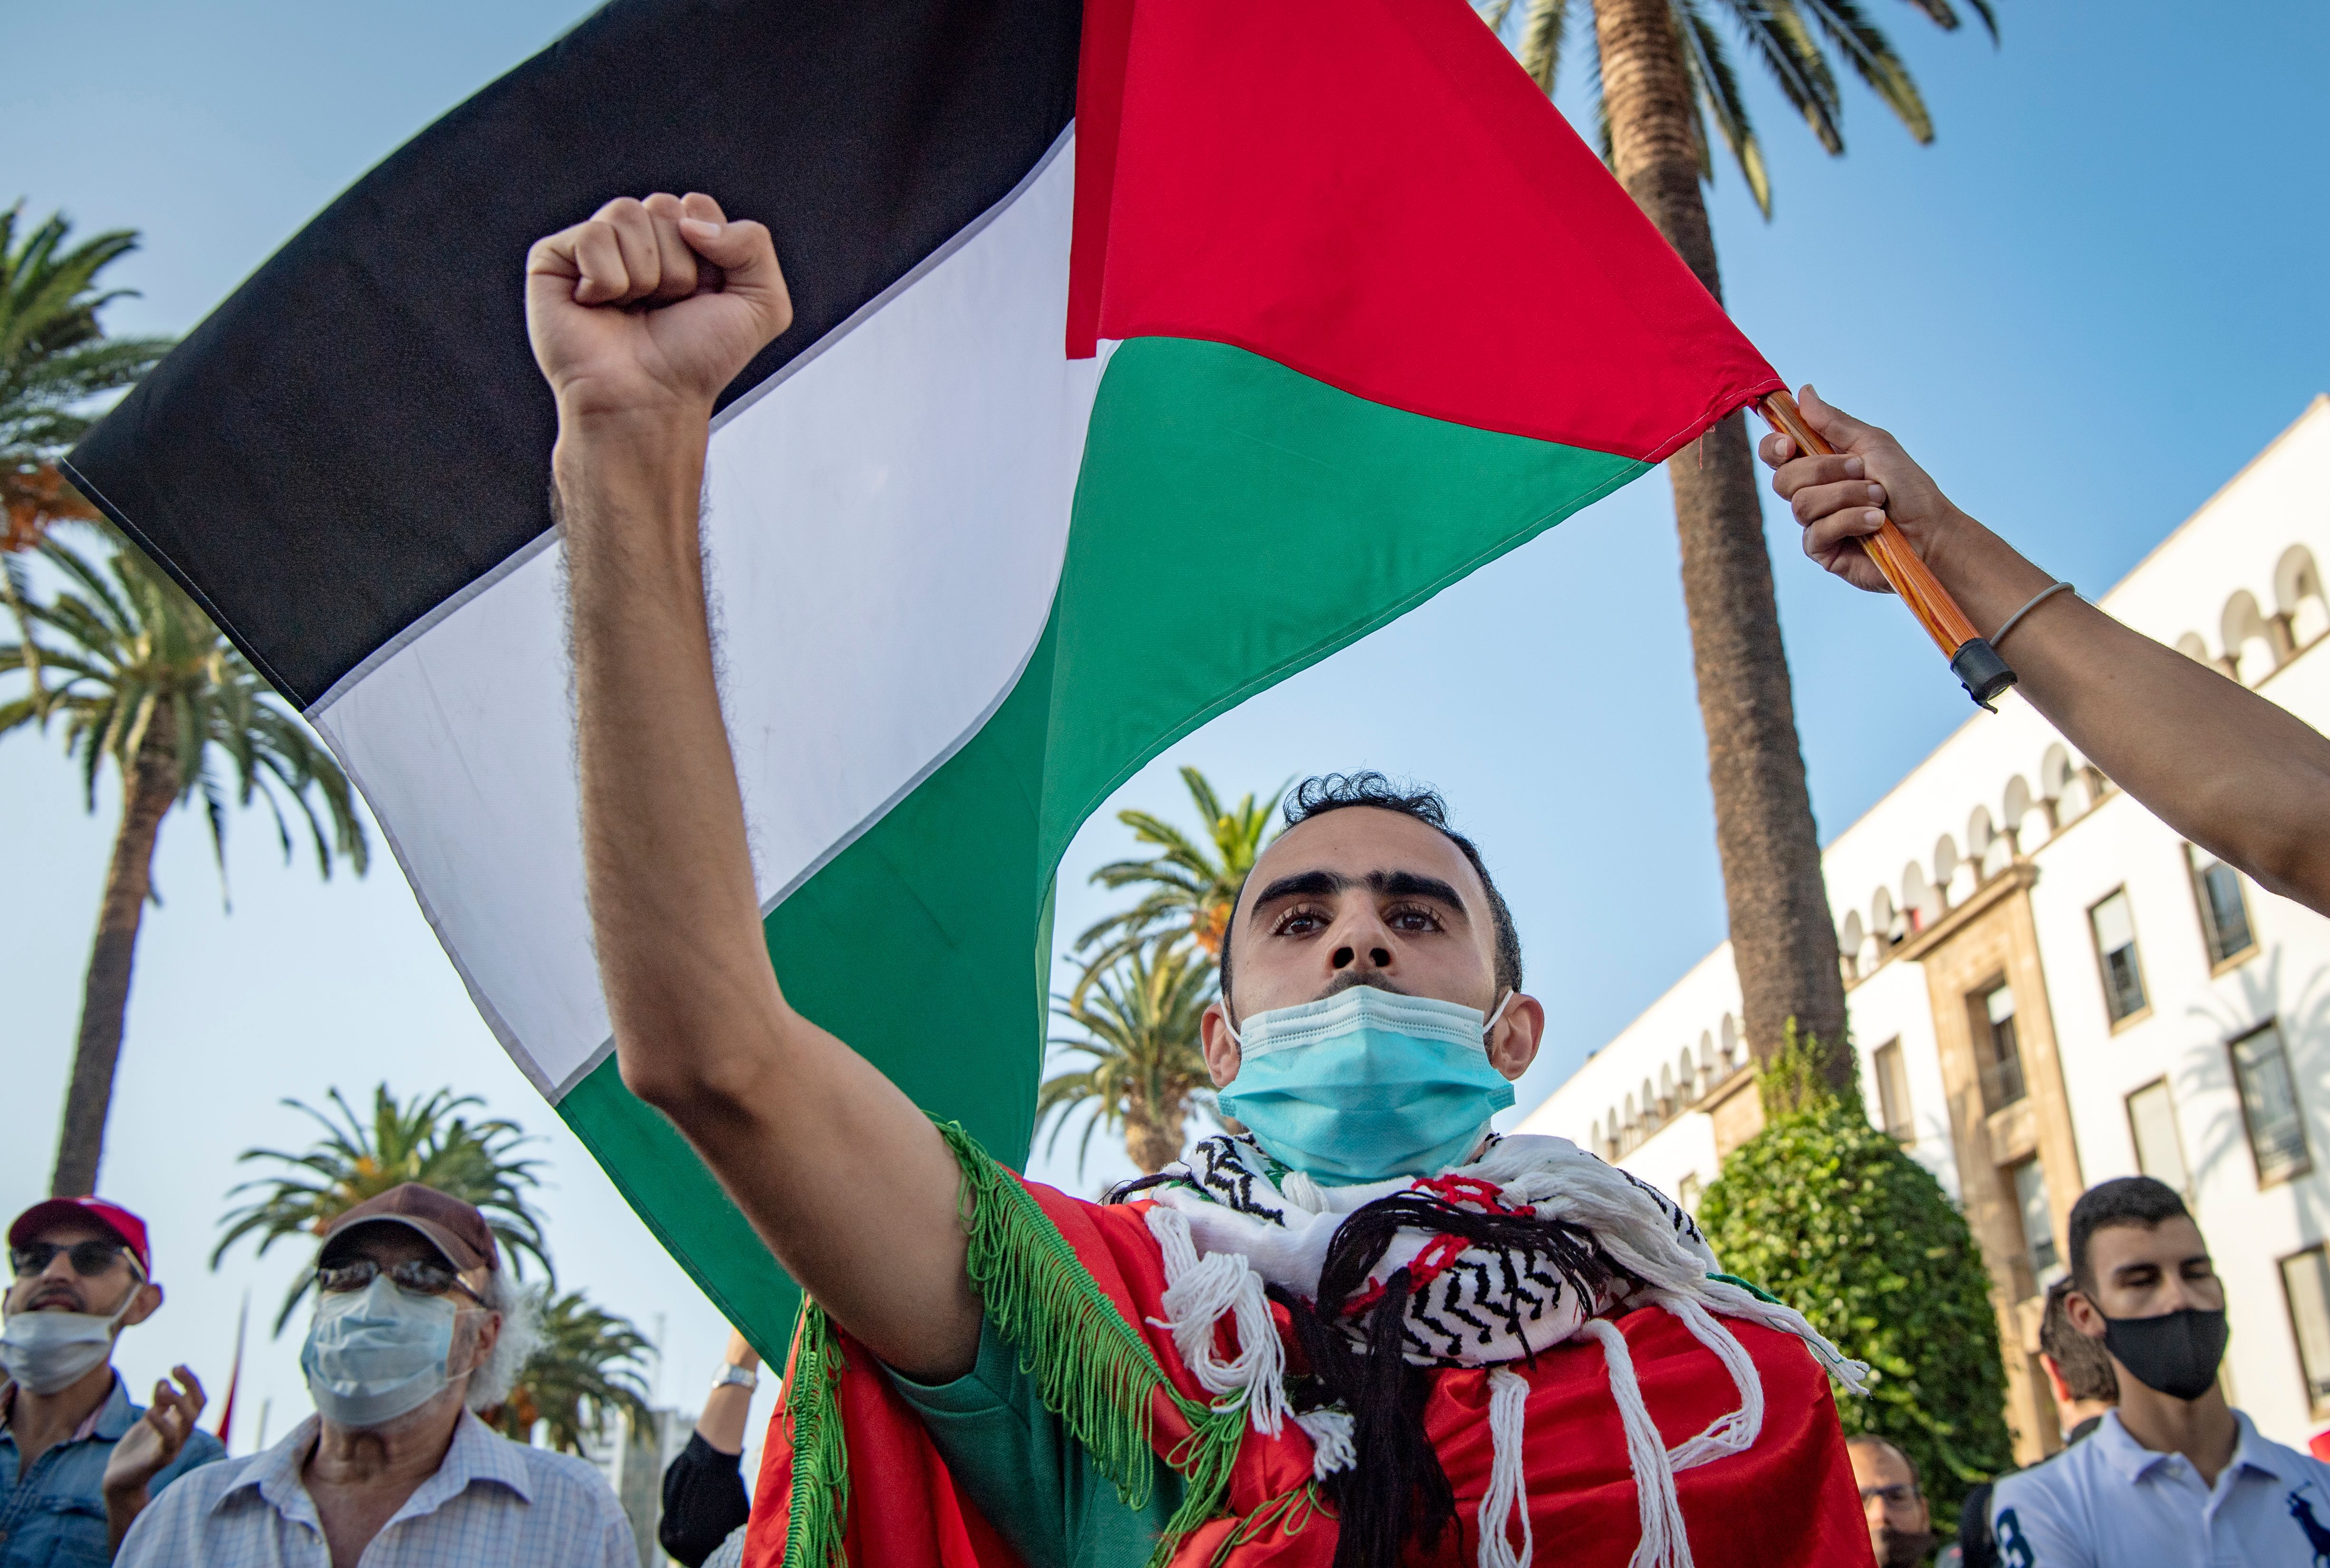 فلسطين رمزاً للنضال وأداةً للانتهازيّة